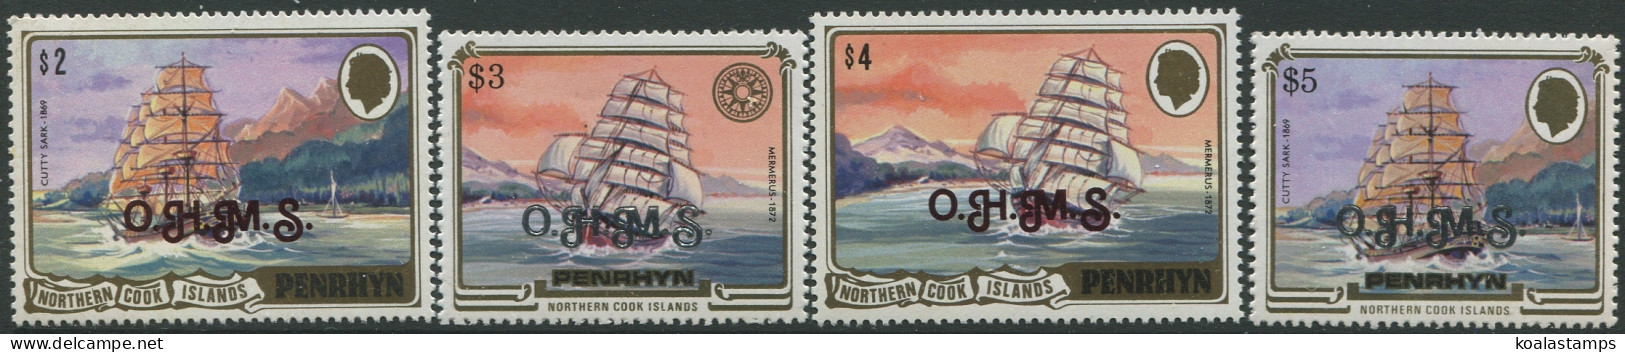 Cook Islands Penrhyn OHMS 1985 SGO33-O36 Historic Ships (4) MNH - Penrhyn